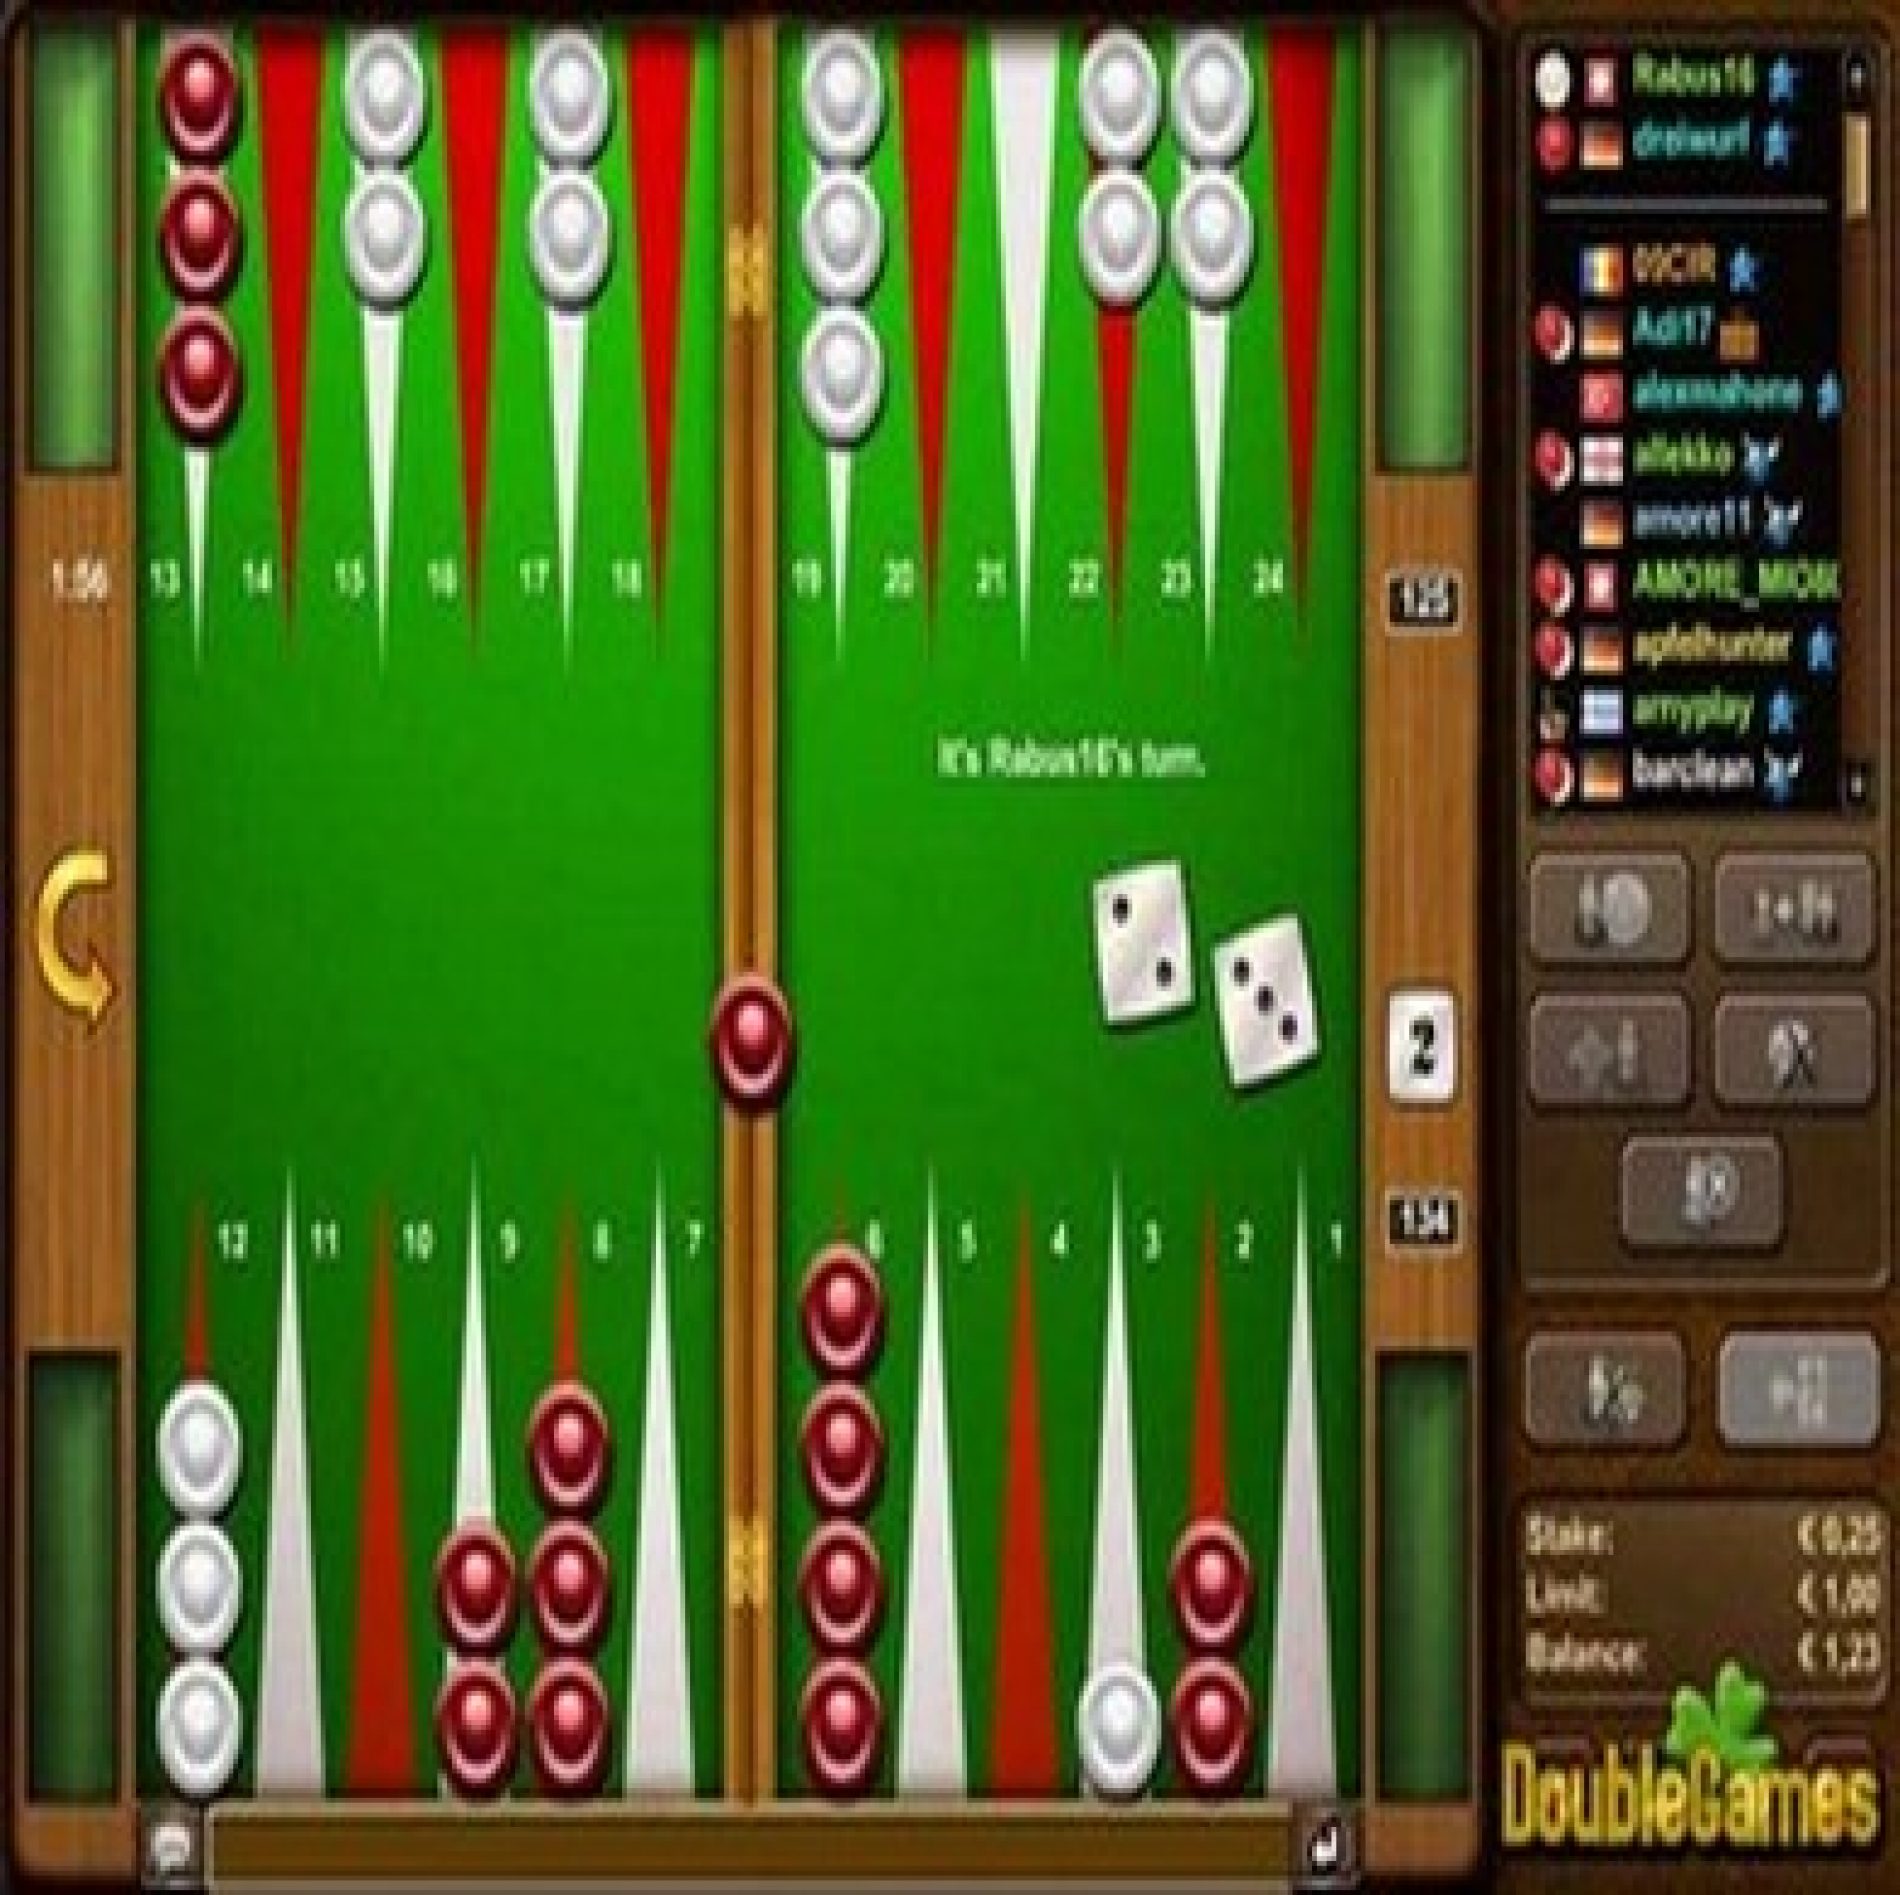 Jouer au backgammon en ligne